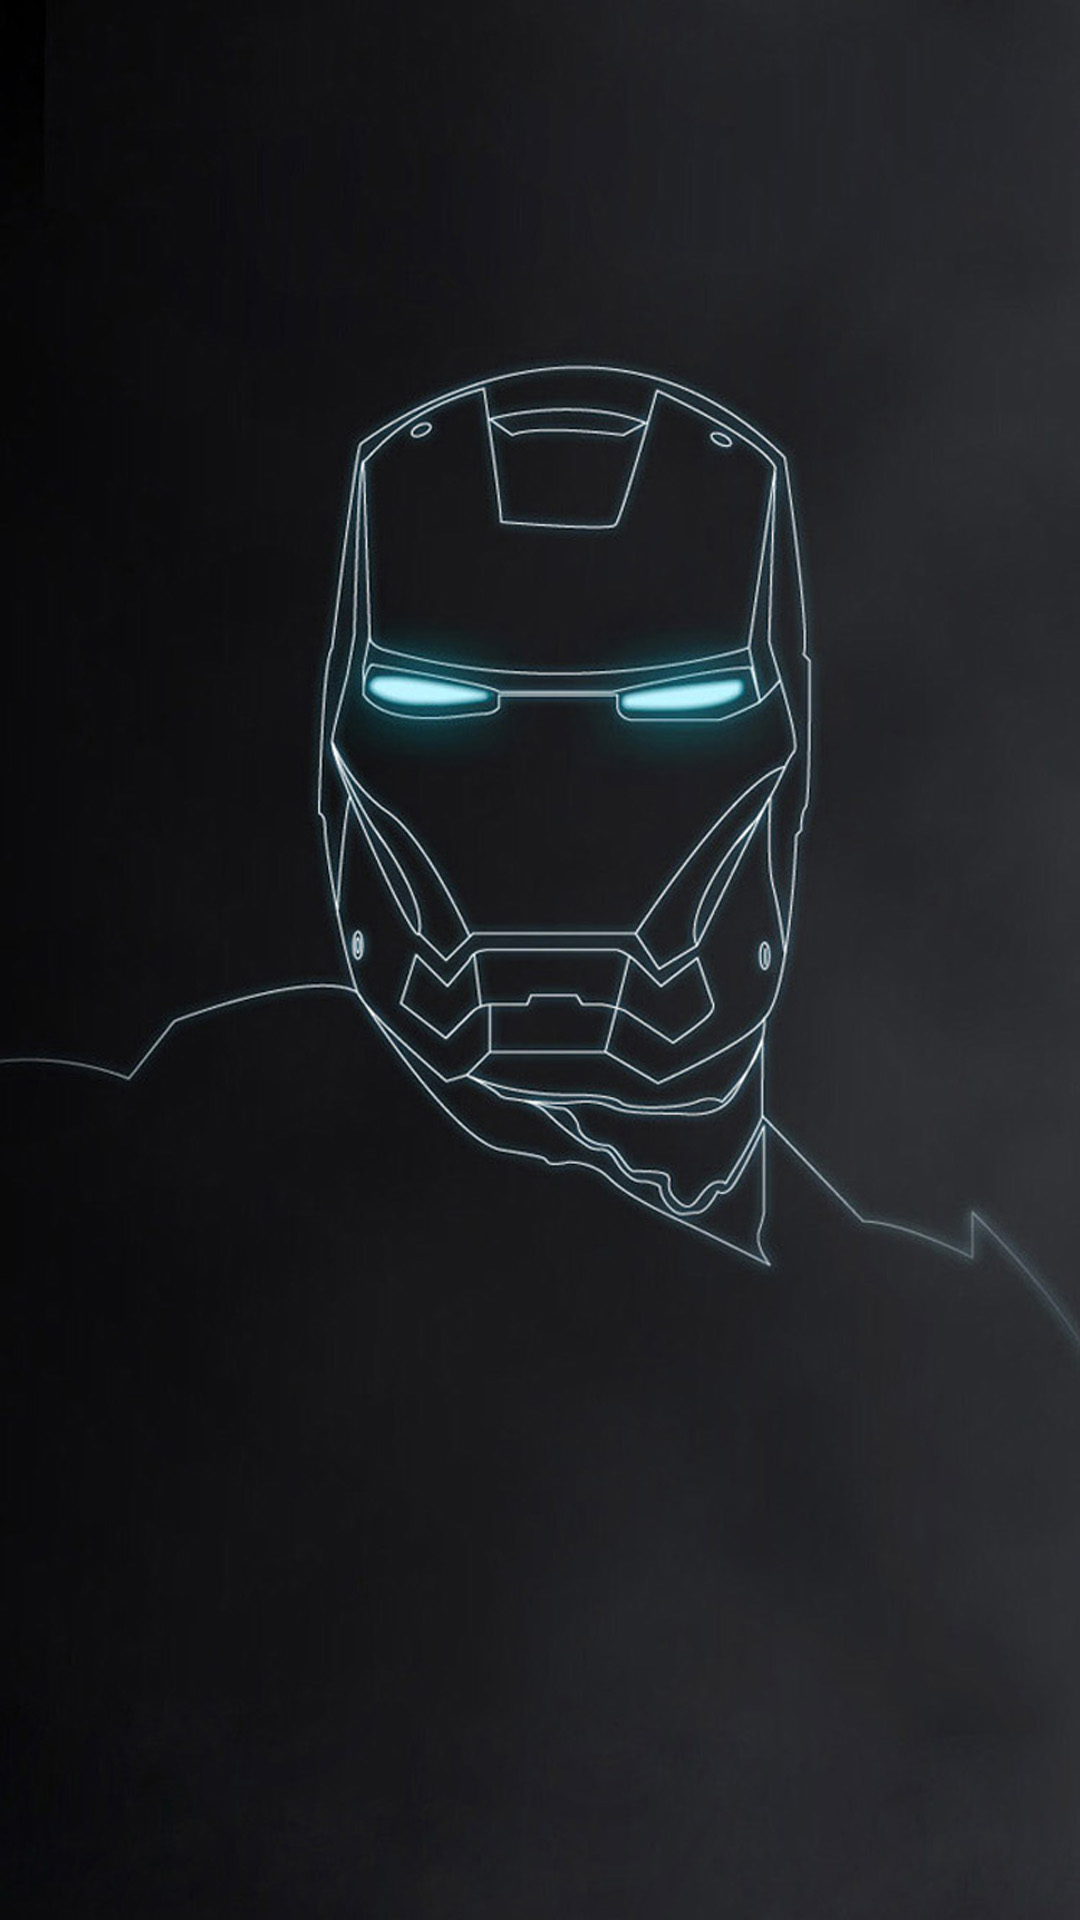 fondo de pantalla de iron man para iphone 6,yelmo,personaje de ficción,dibujo,tecnología,bosquejo